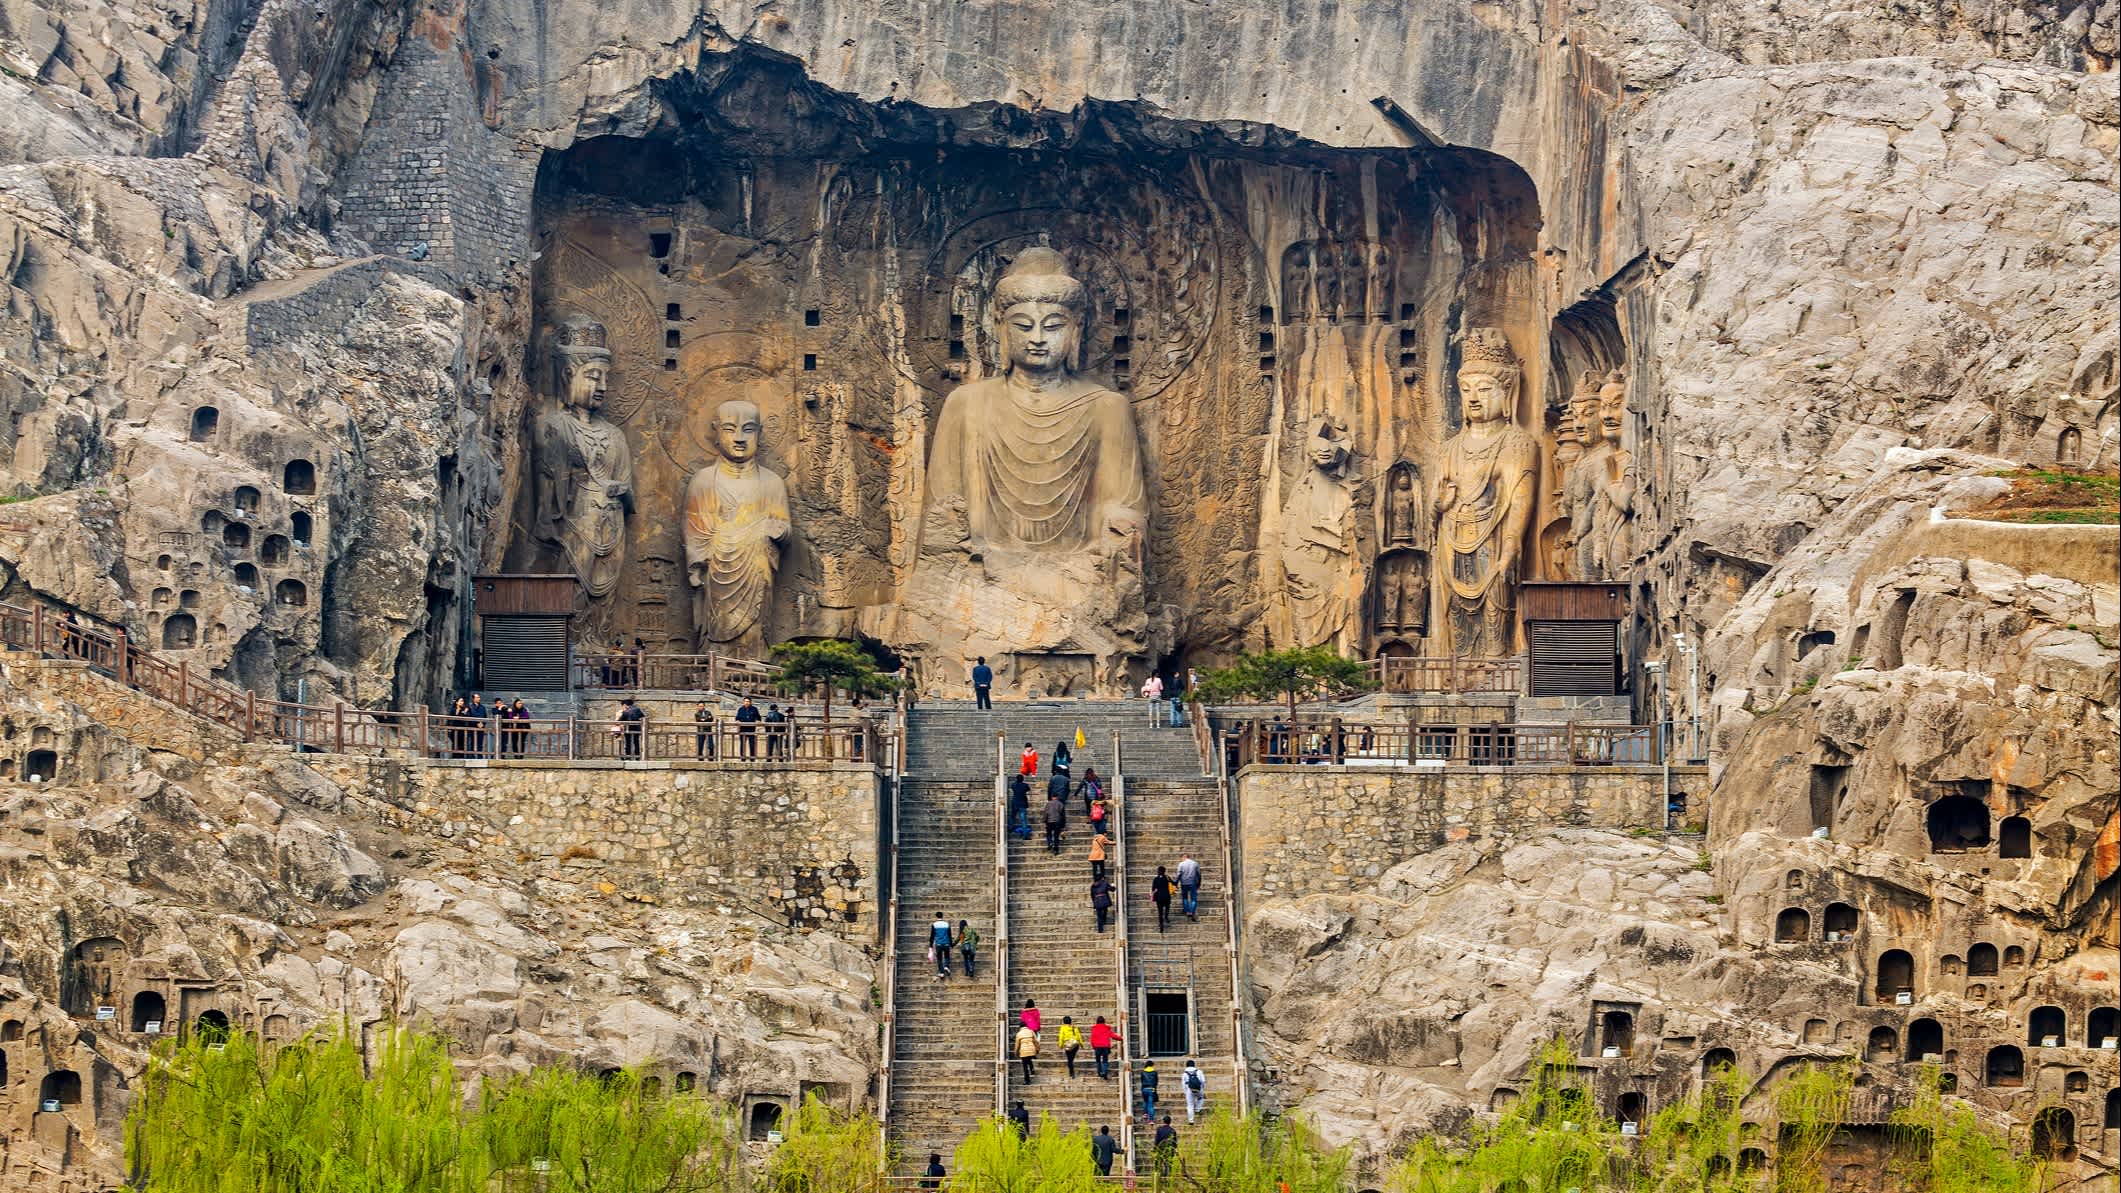 Personnes sur les escaliers menant vers la statue de Bouddha, à Luoyang, en Chine